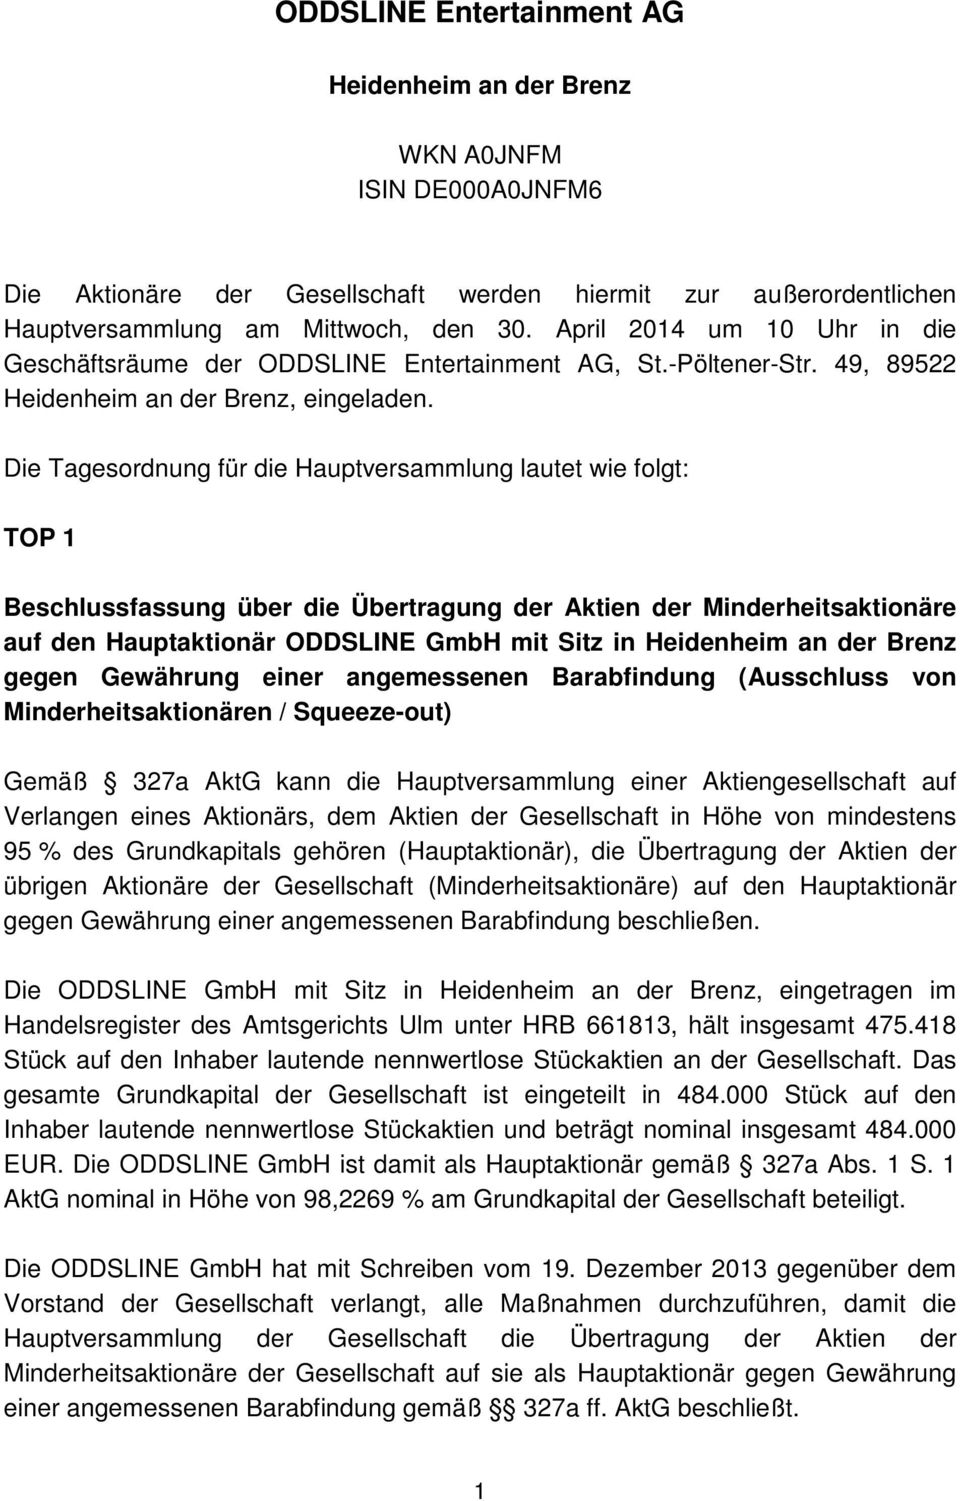 Die Tagesordnung für die Hauptversammlung lautet wie folgt: TOP 1 Beschlussfassung über die Übertragung der Aktien der Minderheitsaktionäre auf den Hauptaktionär ODDSLINE GmbH mit Sitz in Heidenheim